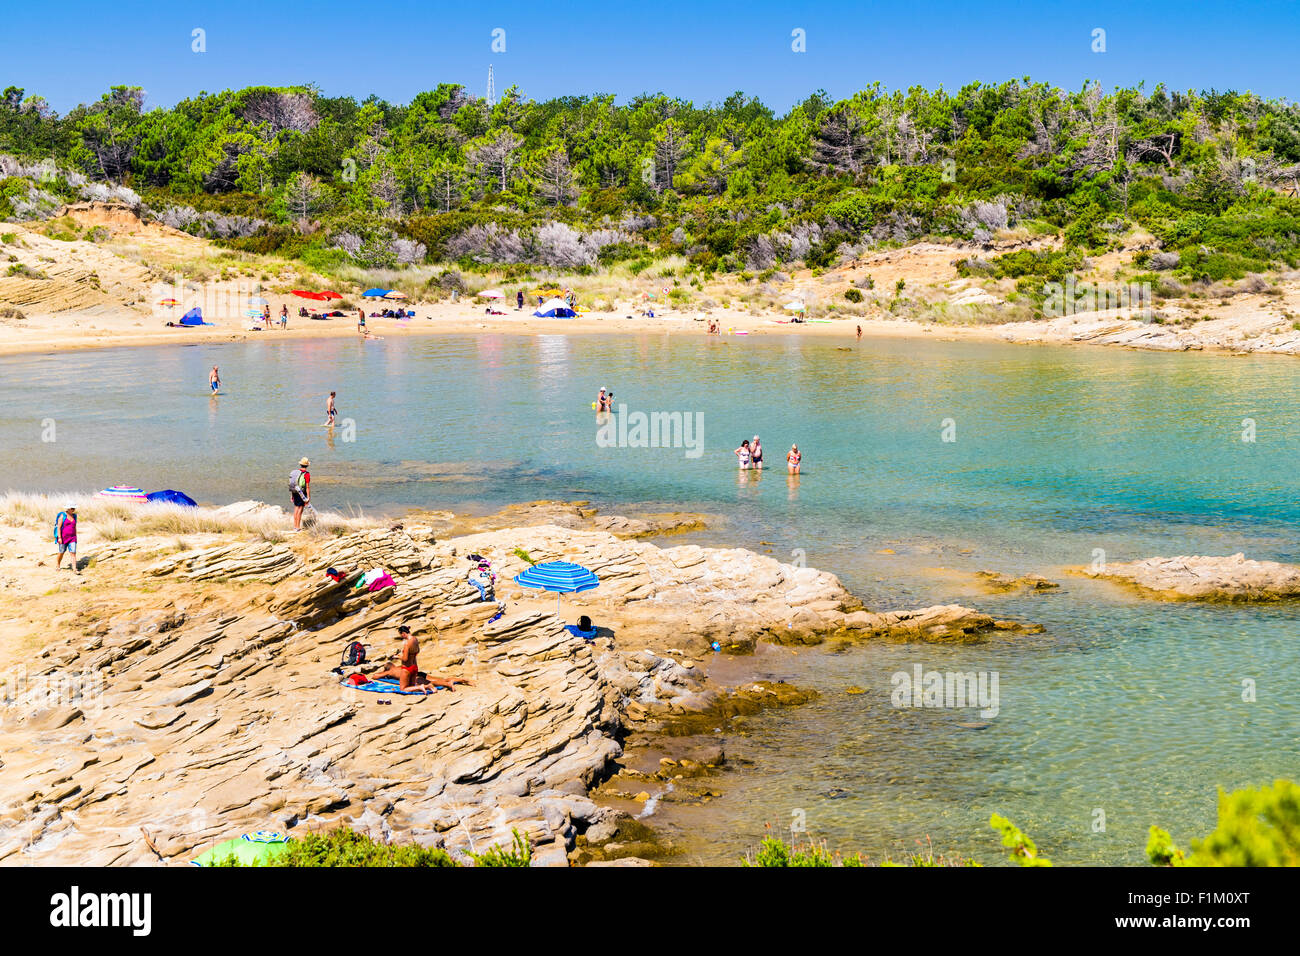 Isola di Rab, Croazia - circa agosto 2015: Le coste incontaminate e acque cristalline dell'isola di Rab, Croazia. Foto Stock